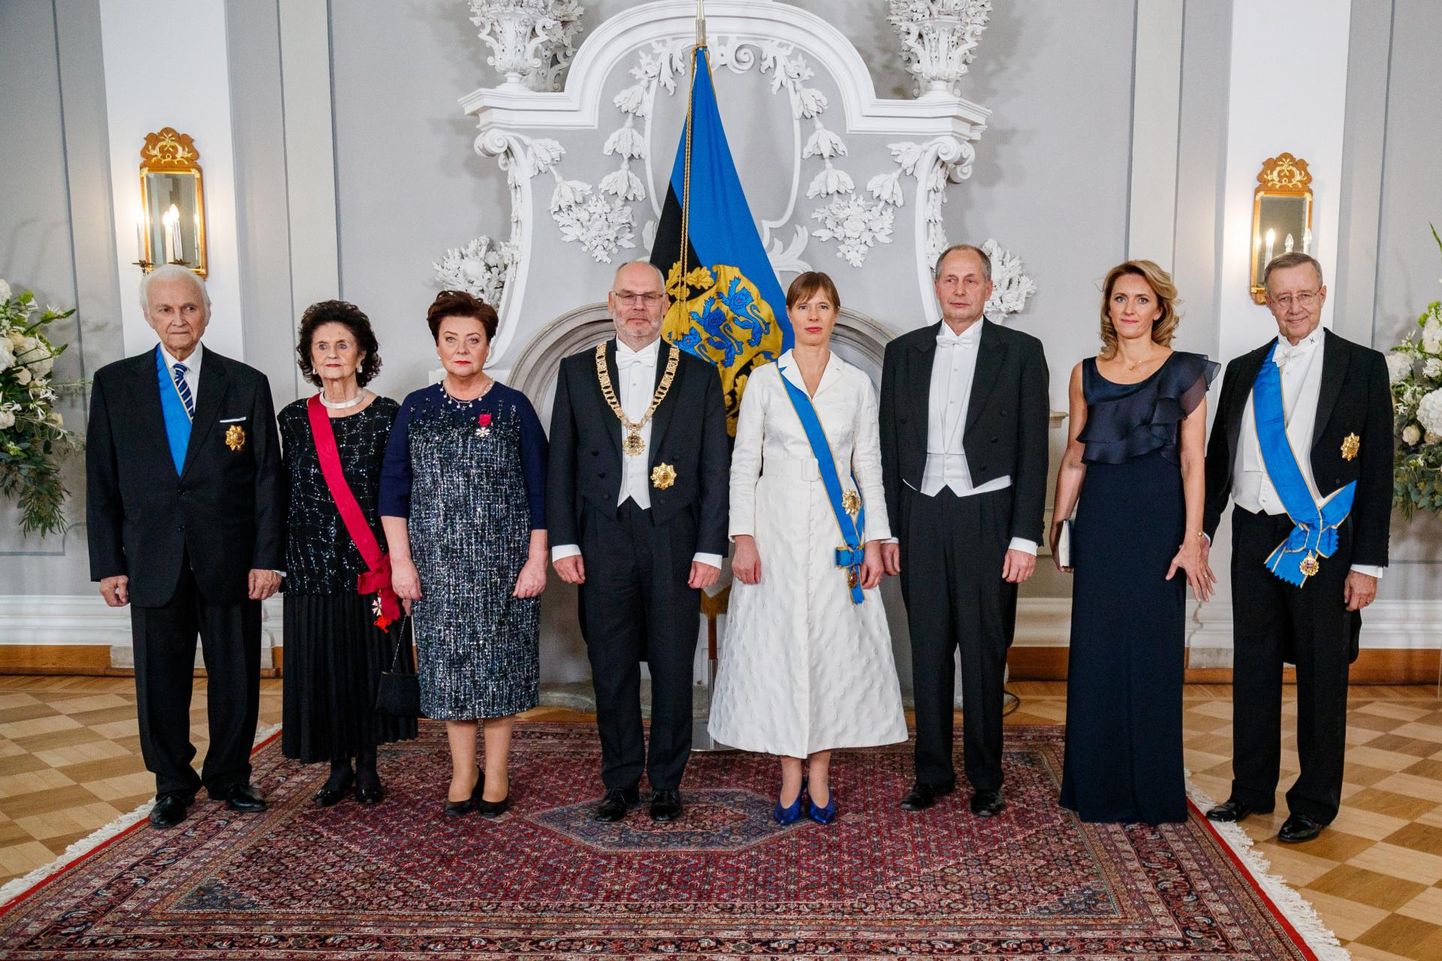 Eesti presidente hindasid võõrsil elavad eestlased hästi. Fotol vasakult Arnold ja Ingrid Rüütel, Sirje ja Alar Karis, Kersti Kaljulaid ja Georgi-Rene Maksimovski, Ieva ja Toomas Hendrik Ilves.